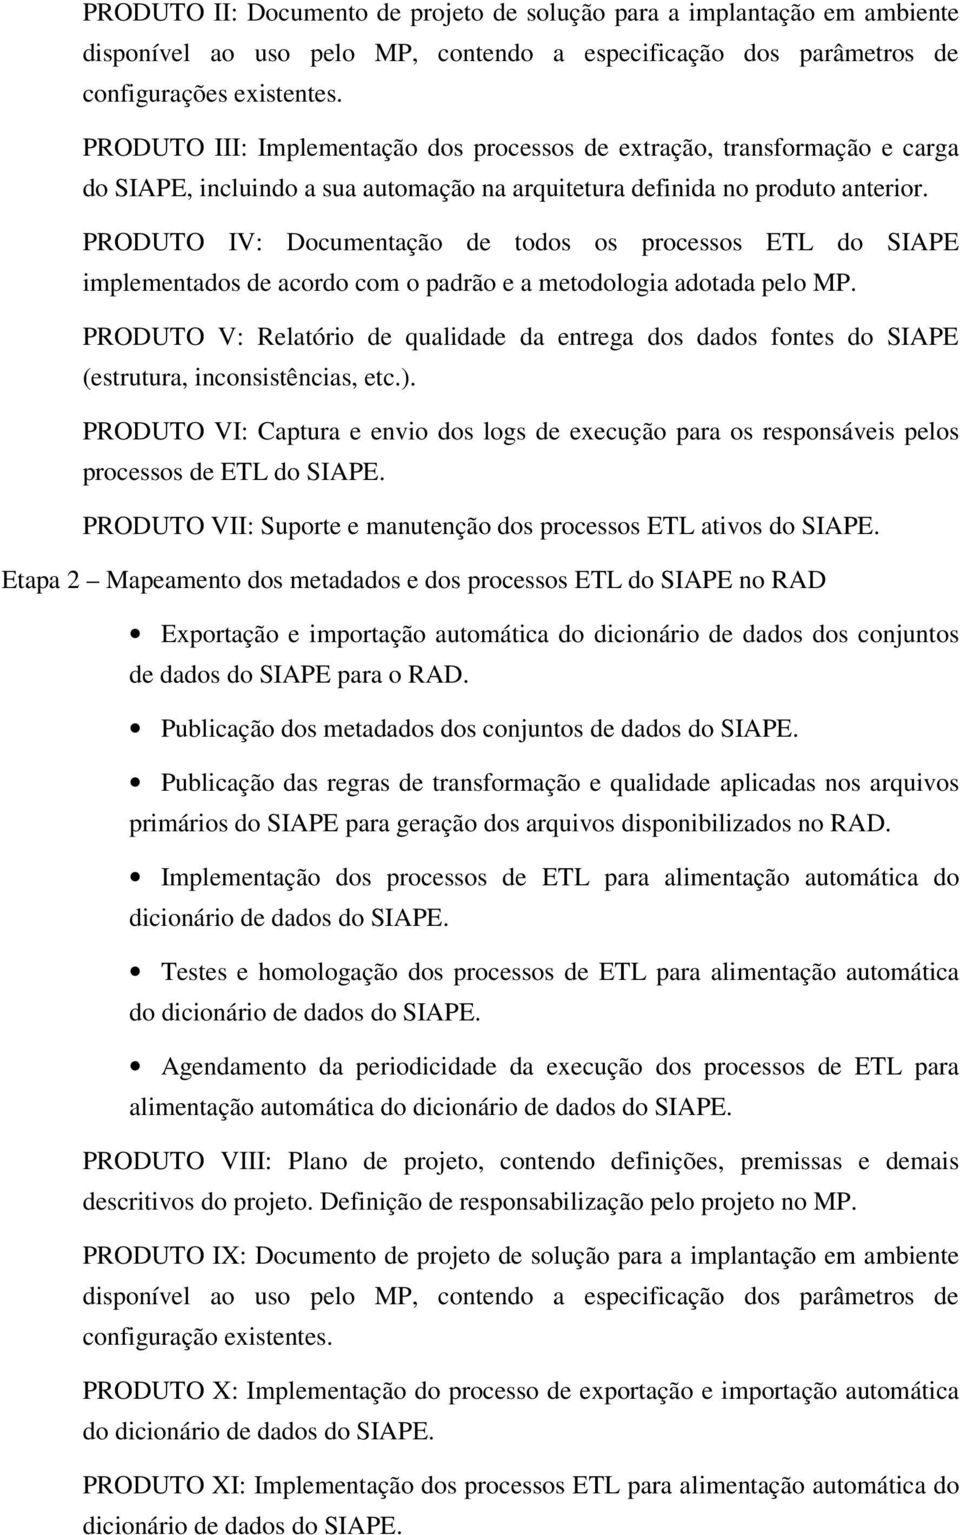 PRODUTO IV: Documentação de todos os processos ETL do SIAPE implementados de acordo com o padrão e a metodologia adotada pelo MP.